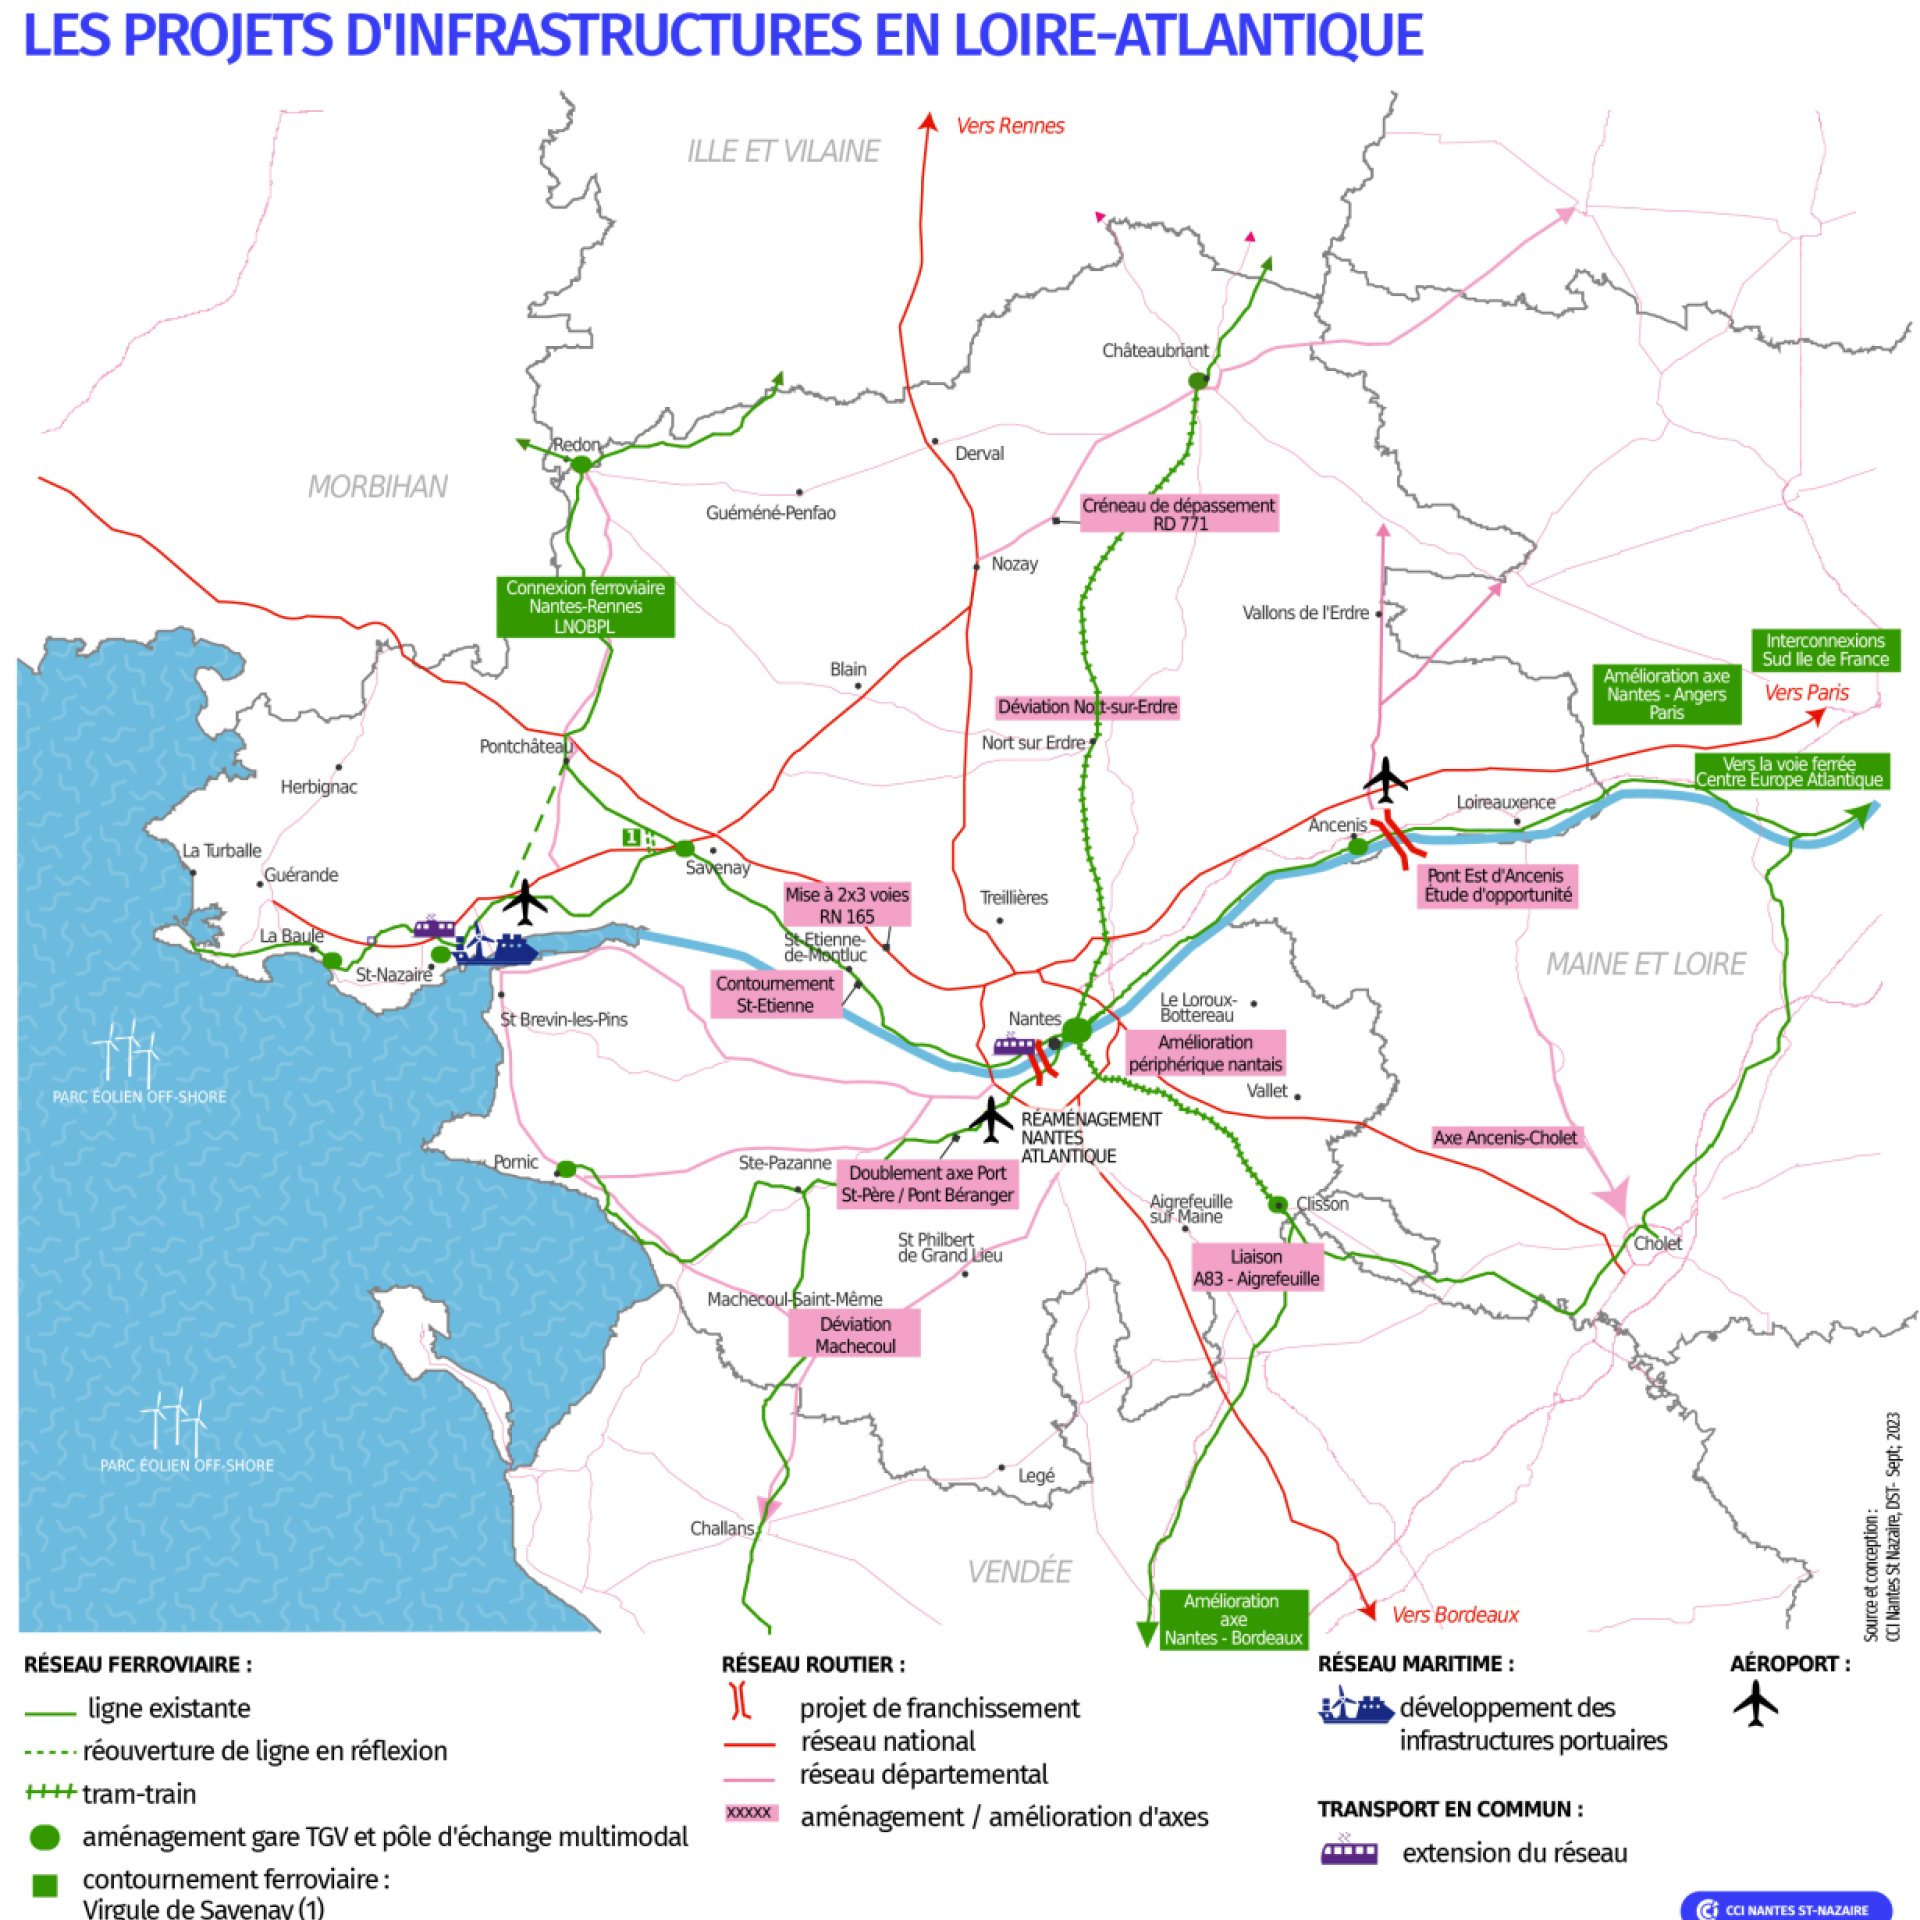 Les grands projets d'infrastructures en Loire-Atlantique